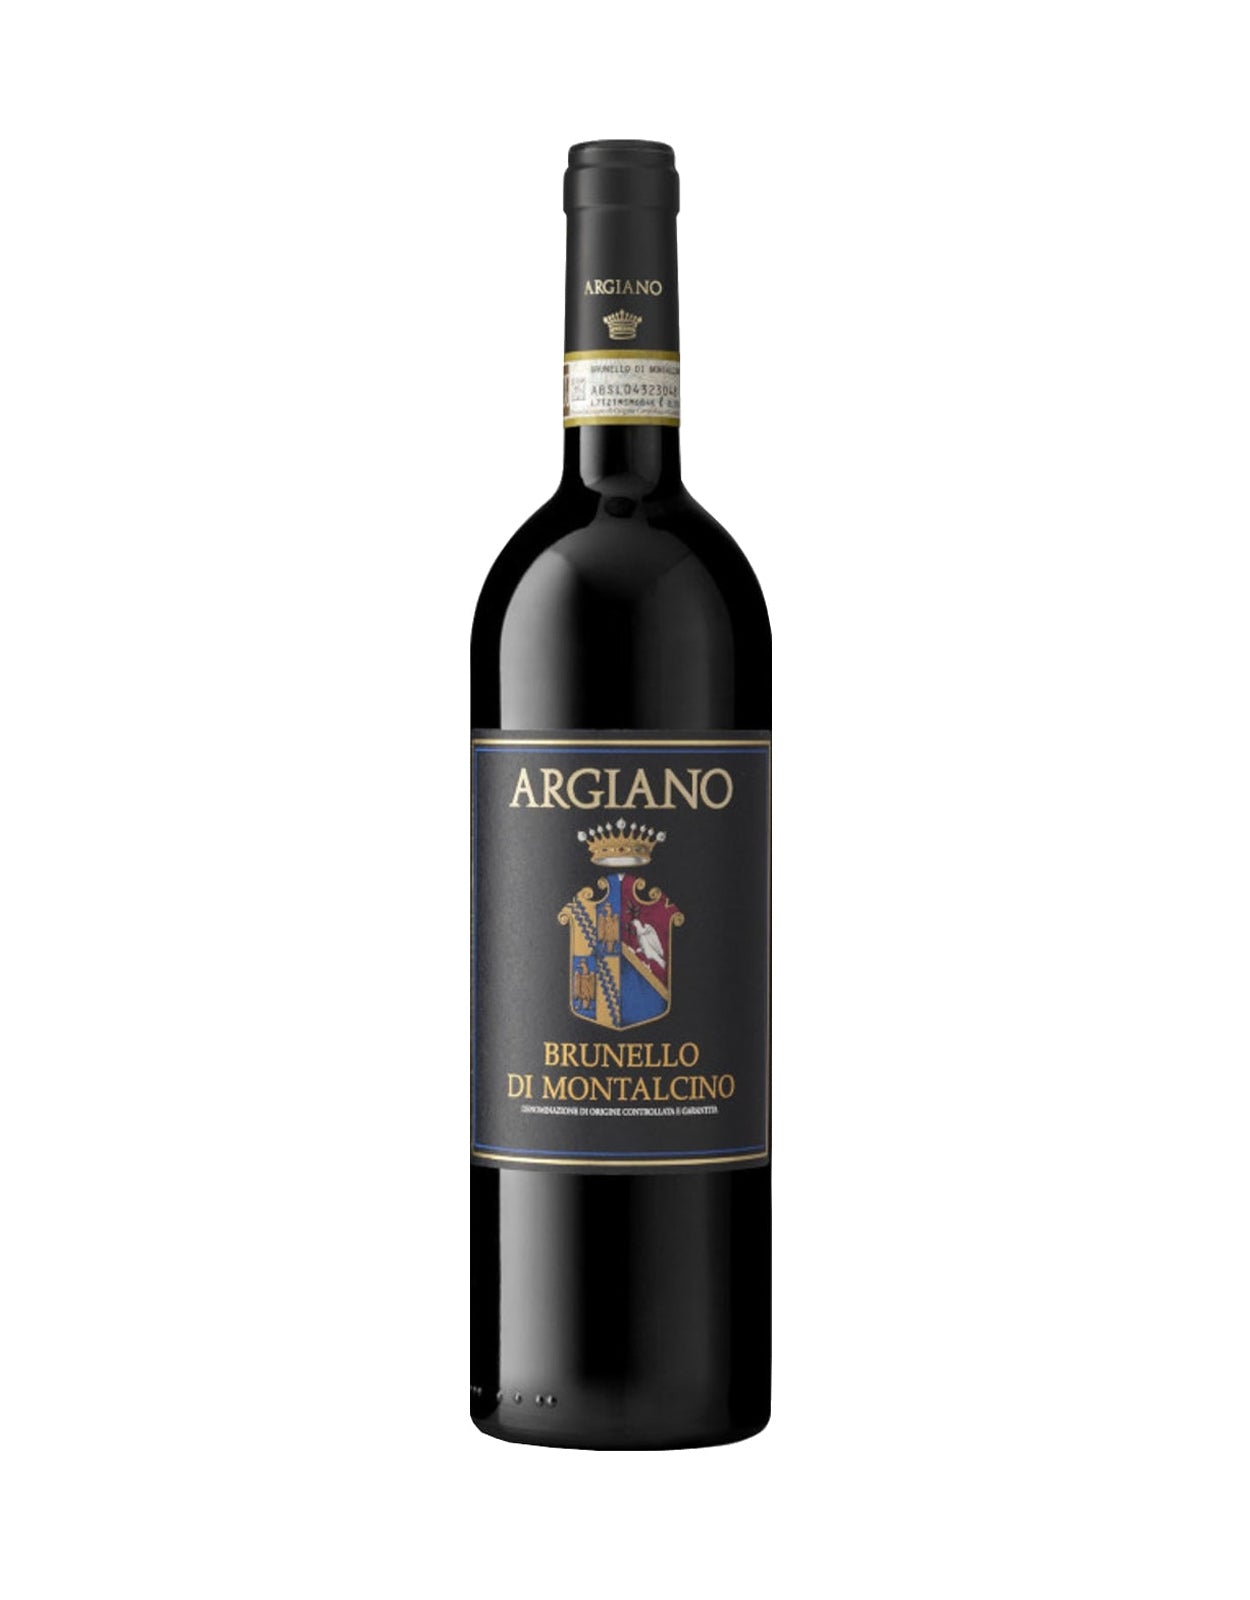 Argiano Brunello di Montalcino 2019 - 1.5 Litre Bottle